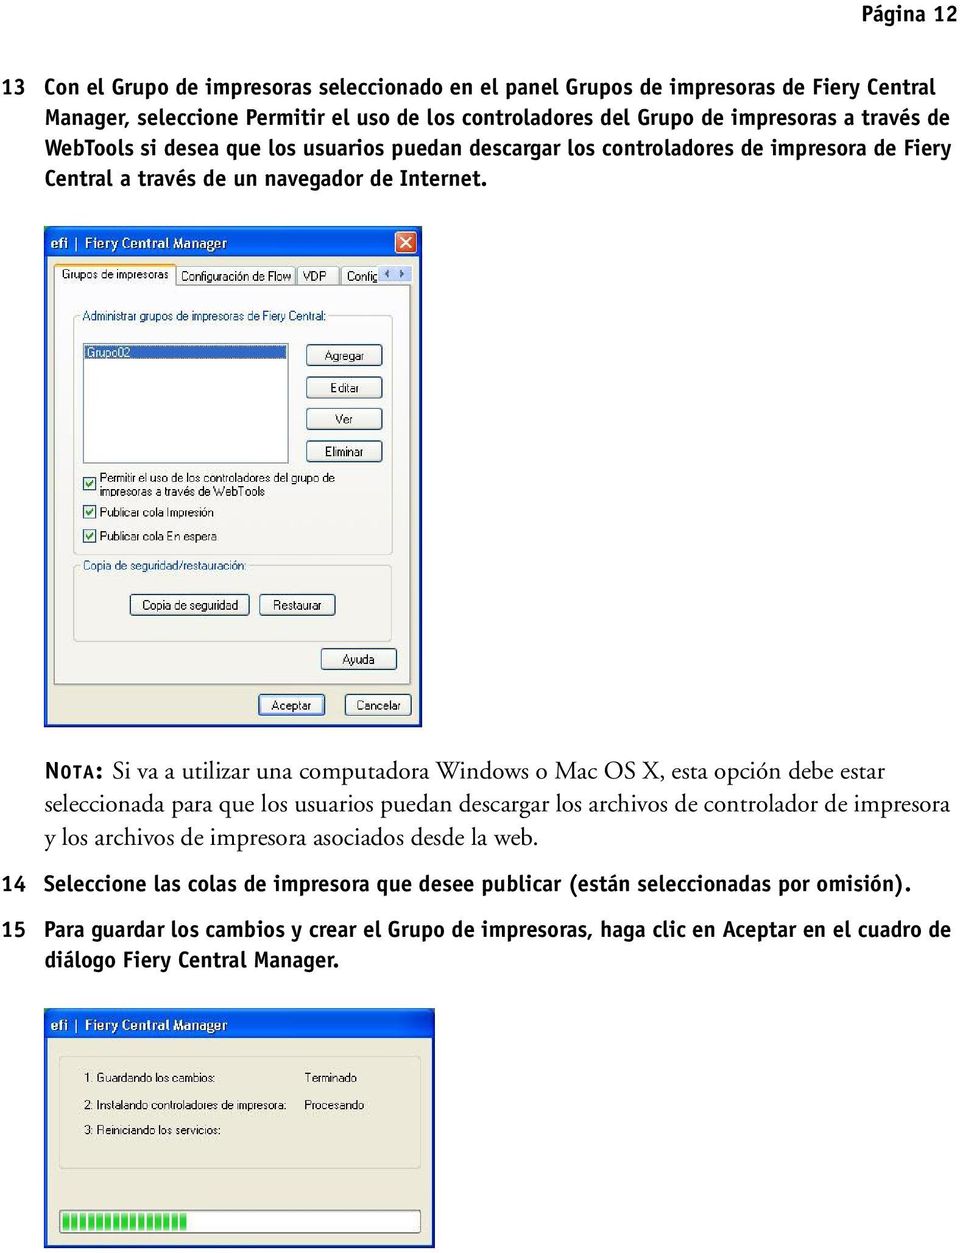 NOTA: Si va a utilizar una computadora Windows o Mac OS X, esta opción debe estar seleccionada para que los usuarios puedan descargar los archivos de controlador de impresora y los archivos de